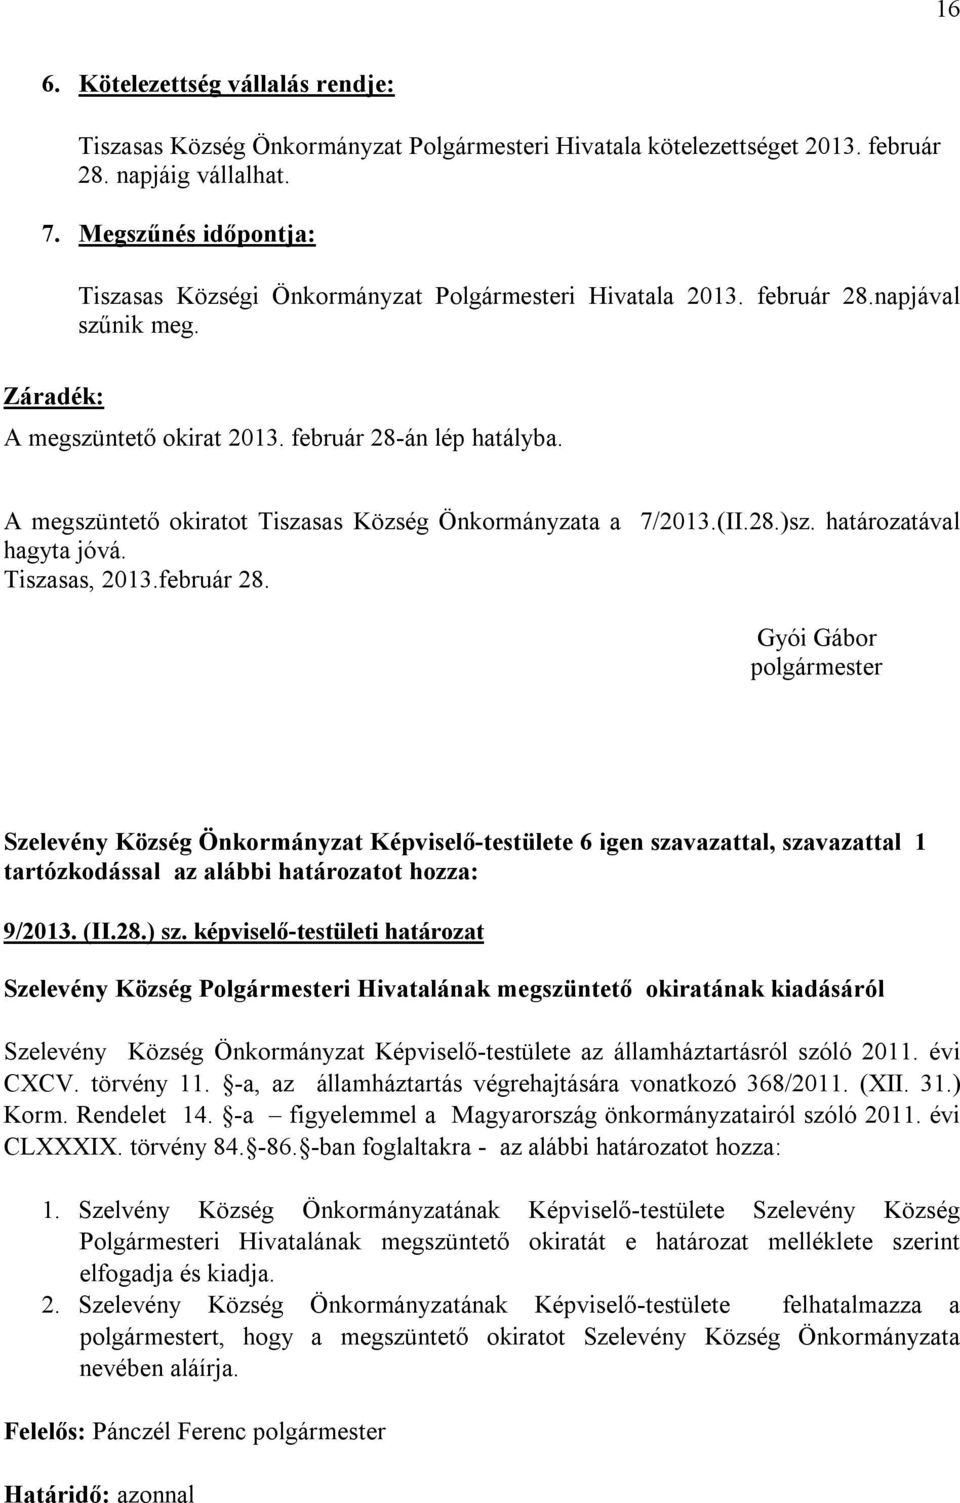 A megszüntető okiratot Tiszasas Község Önkormányzata a 7/2013.(II.28.)sz. határozatával hagyta jóvá. Tiszasas, 2013.február 28.